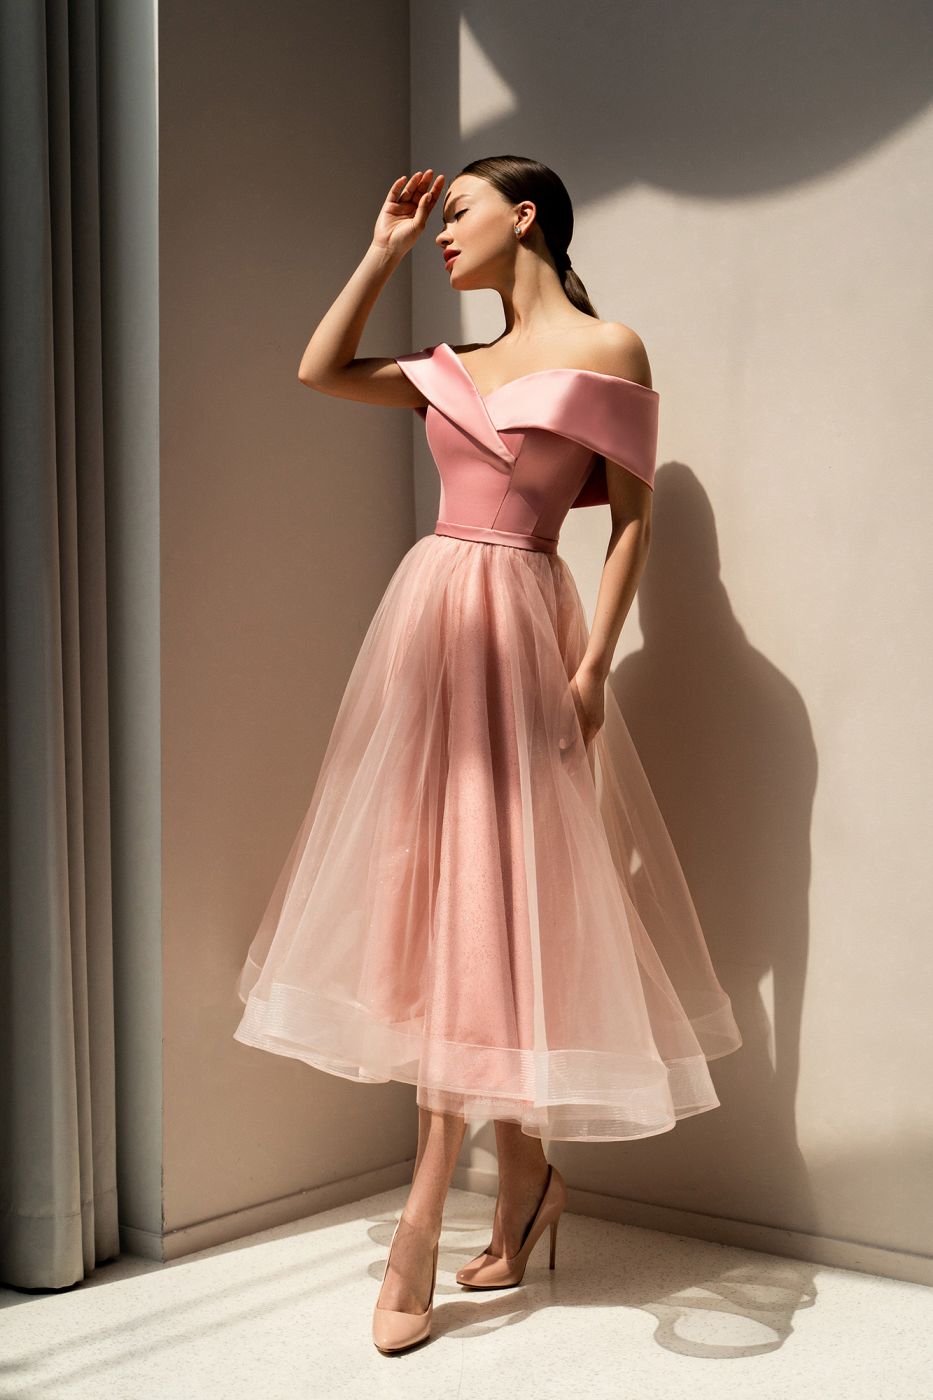 Вечернее платье дымчато-розового цвета с портретным декольте Арт.569